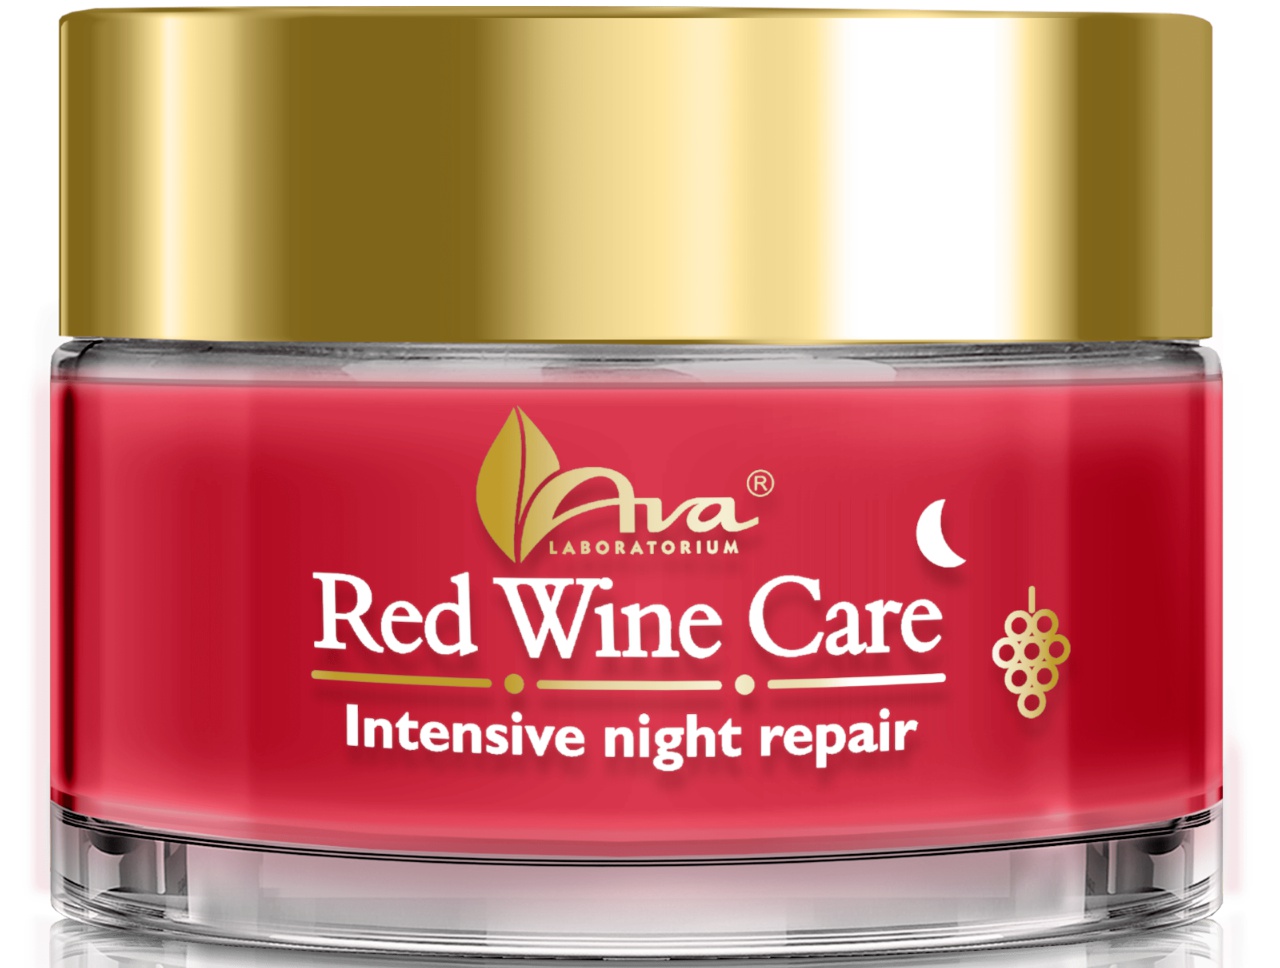 Ava Laboratorium Red Wine Care Intensive Night Repair